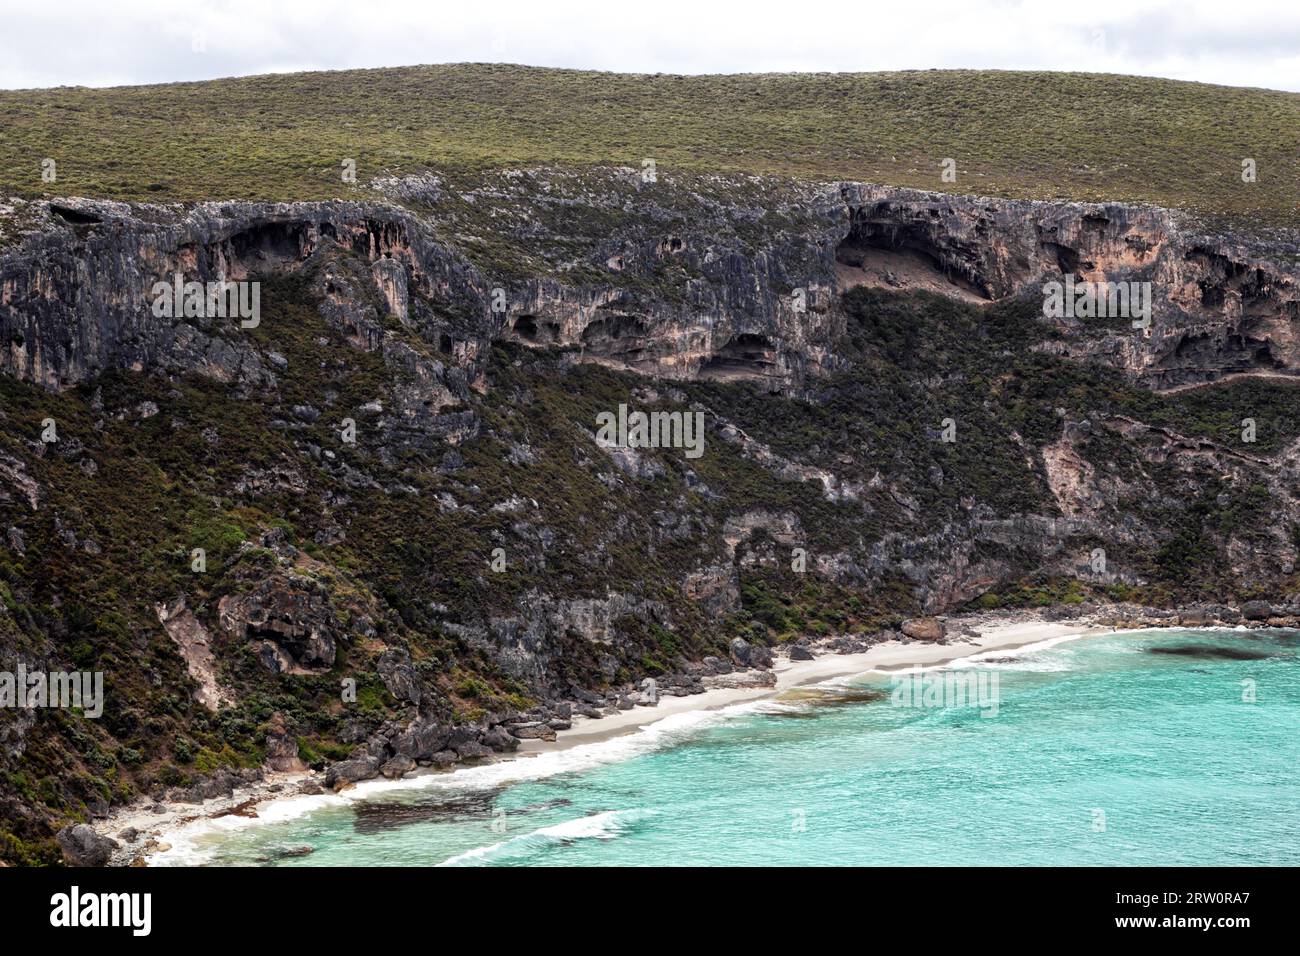 Grottes sur la falaise de Weirs Cove dans le parc national de Flinders Chase sur Kangaroo Island, Australie méridionale, Australie Banque D'Images